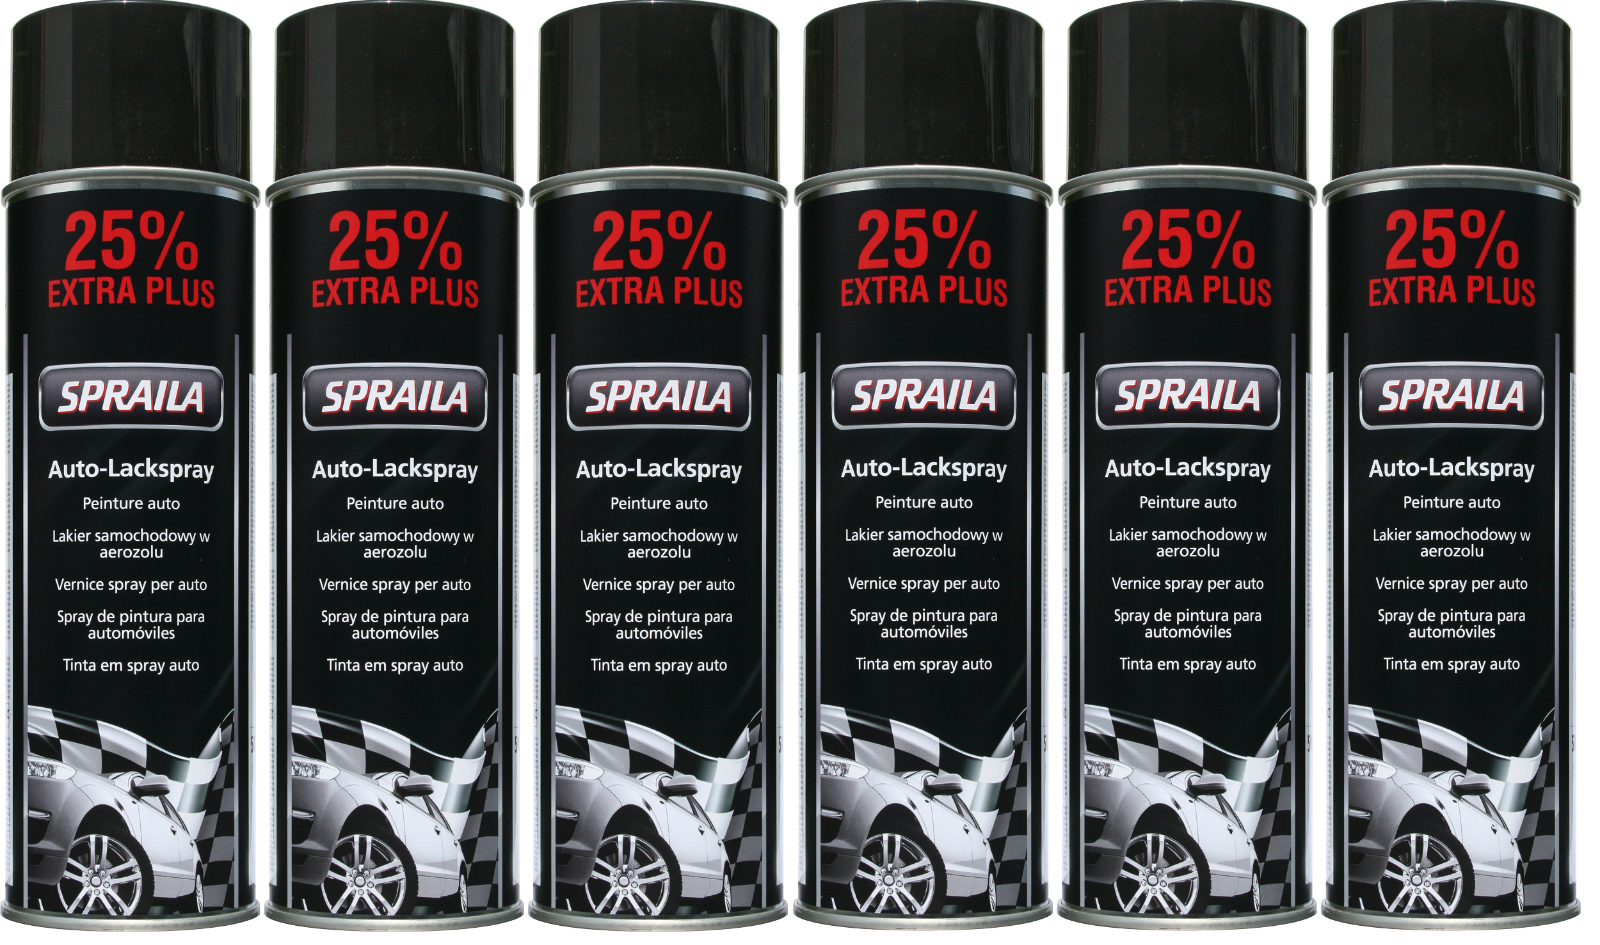 Afbeelding van Spraila schwarz glänzend Sprühlack 6 x 500ml von AutoK 300905